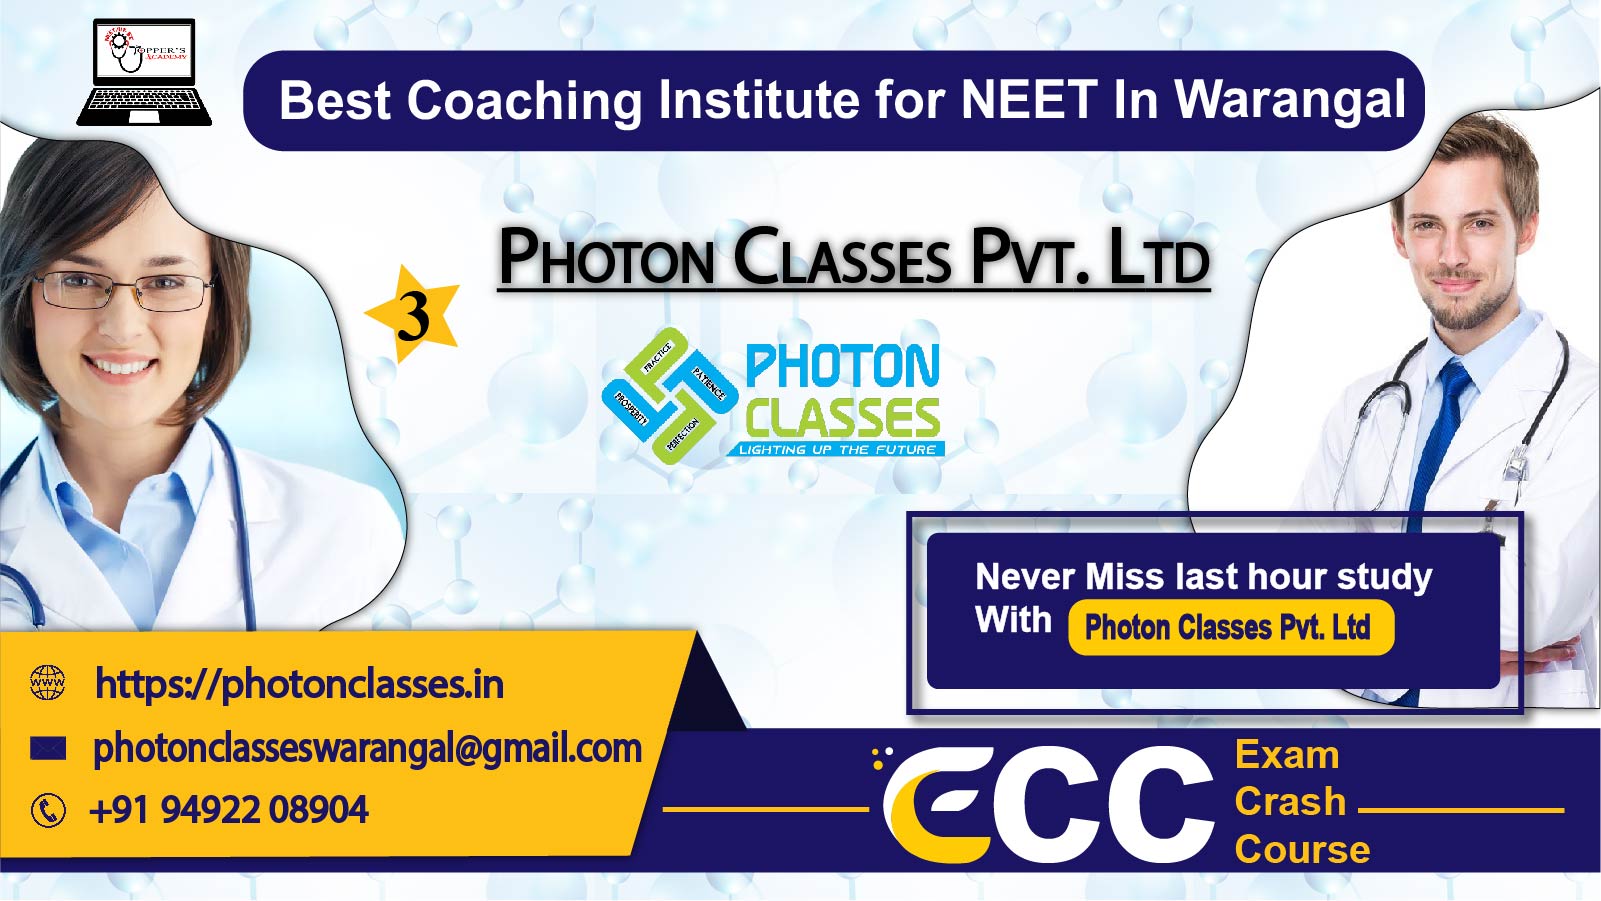 Photon Classes Pvt. Ltd. in Warangal